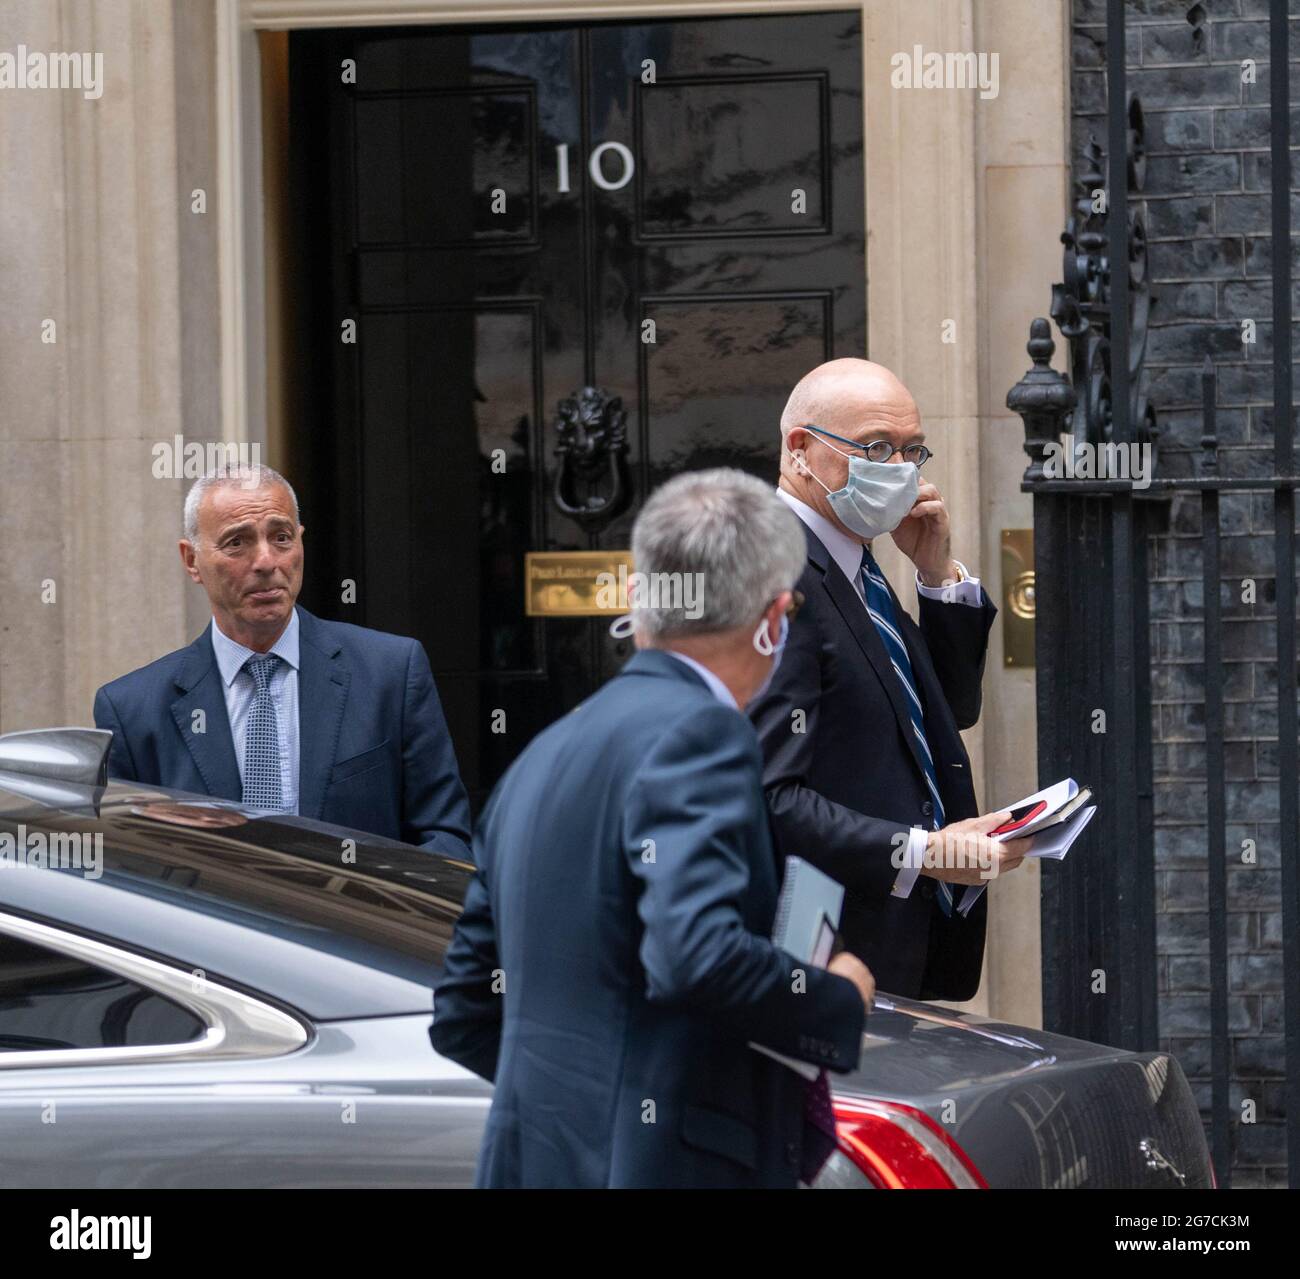 Londres, Royaume-Uni. 13 juillet 2021. Une délégation néo-zélandaise arrive au 10 Downing Street Londres UK crédit: Ian Davidson/Alay Live News Banque D'Images